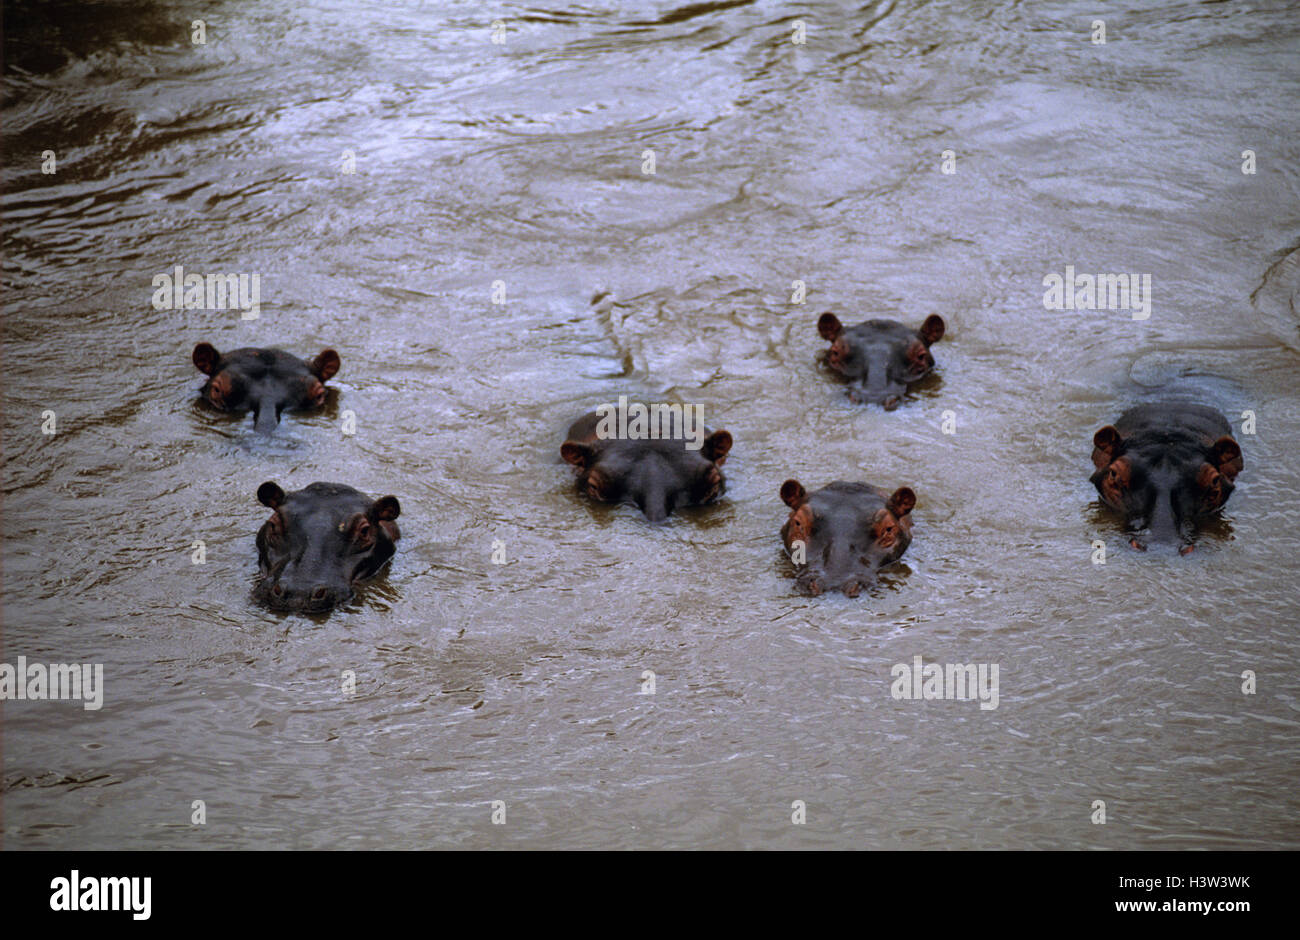 Hippopotame (Hippopotamus amphibius), six submergés dans rivière avec tête hors de l'eau. masai Mara national reserve, Kenya Banque D'Images